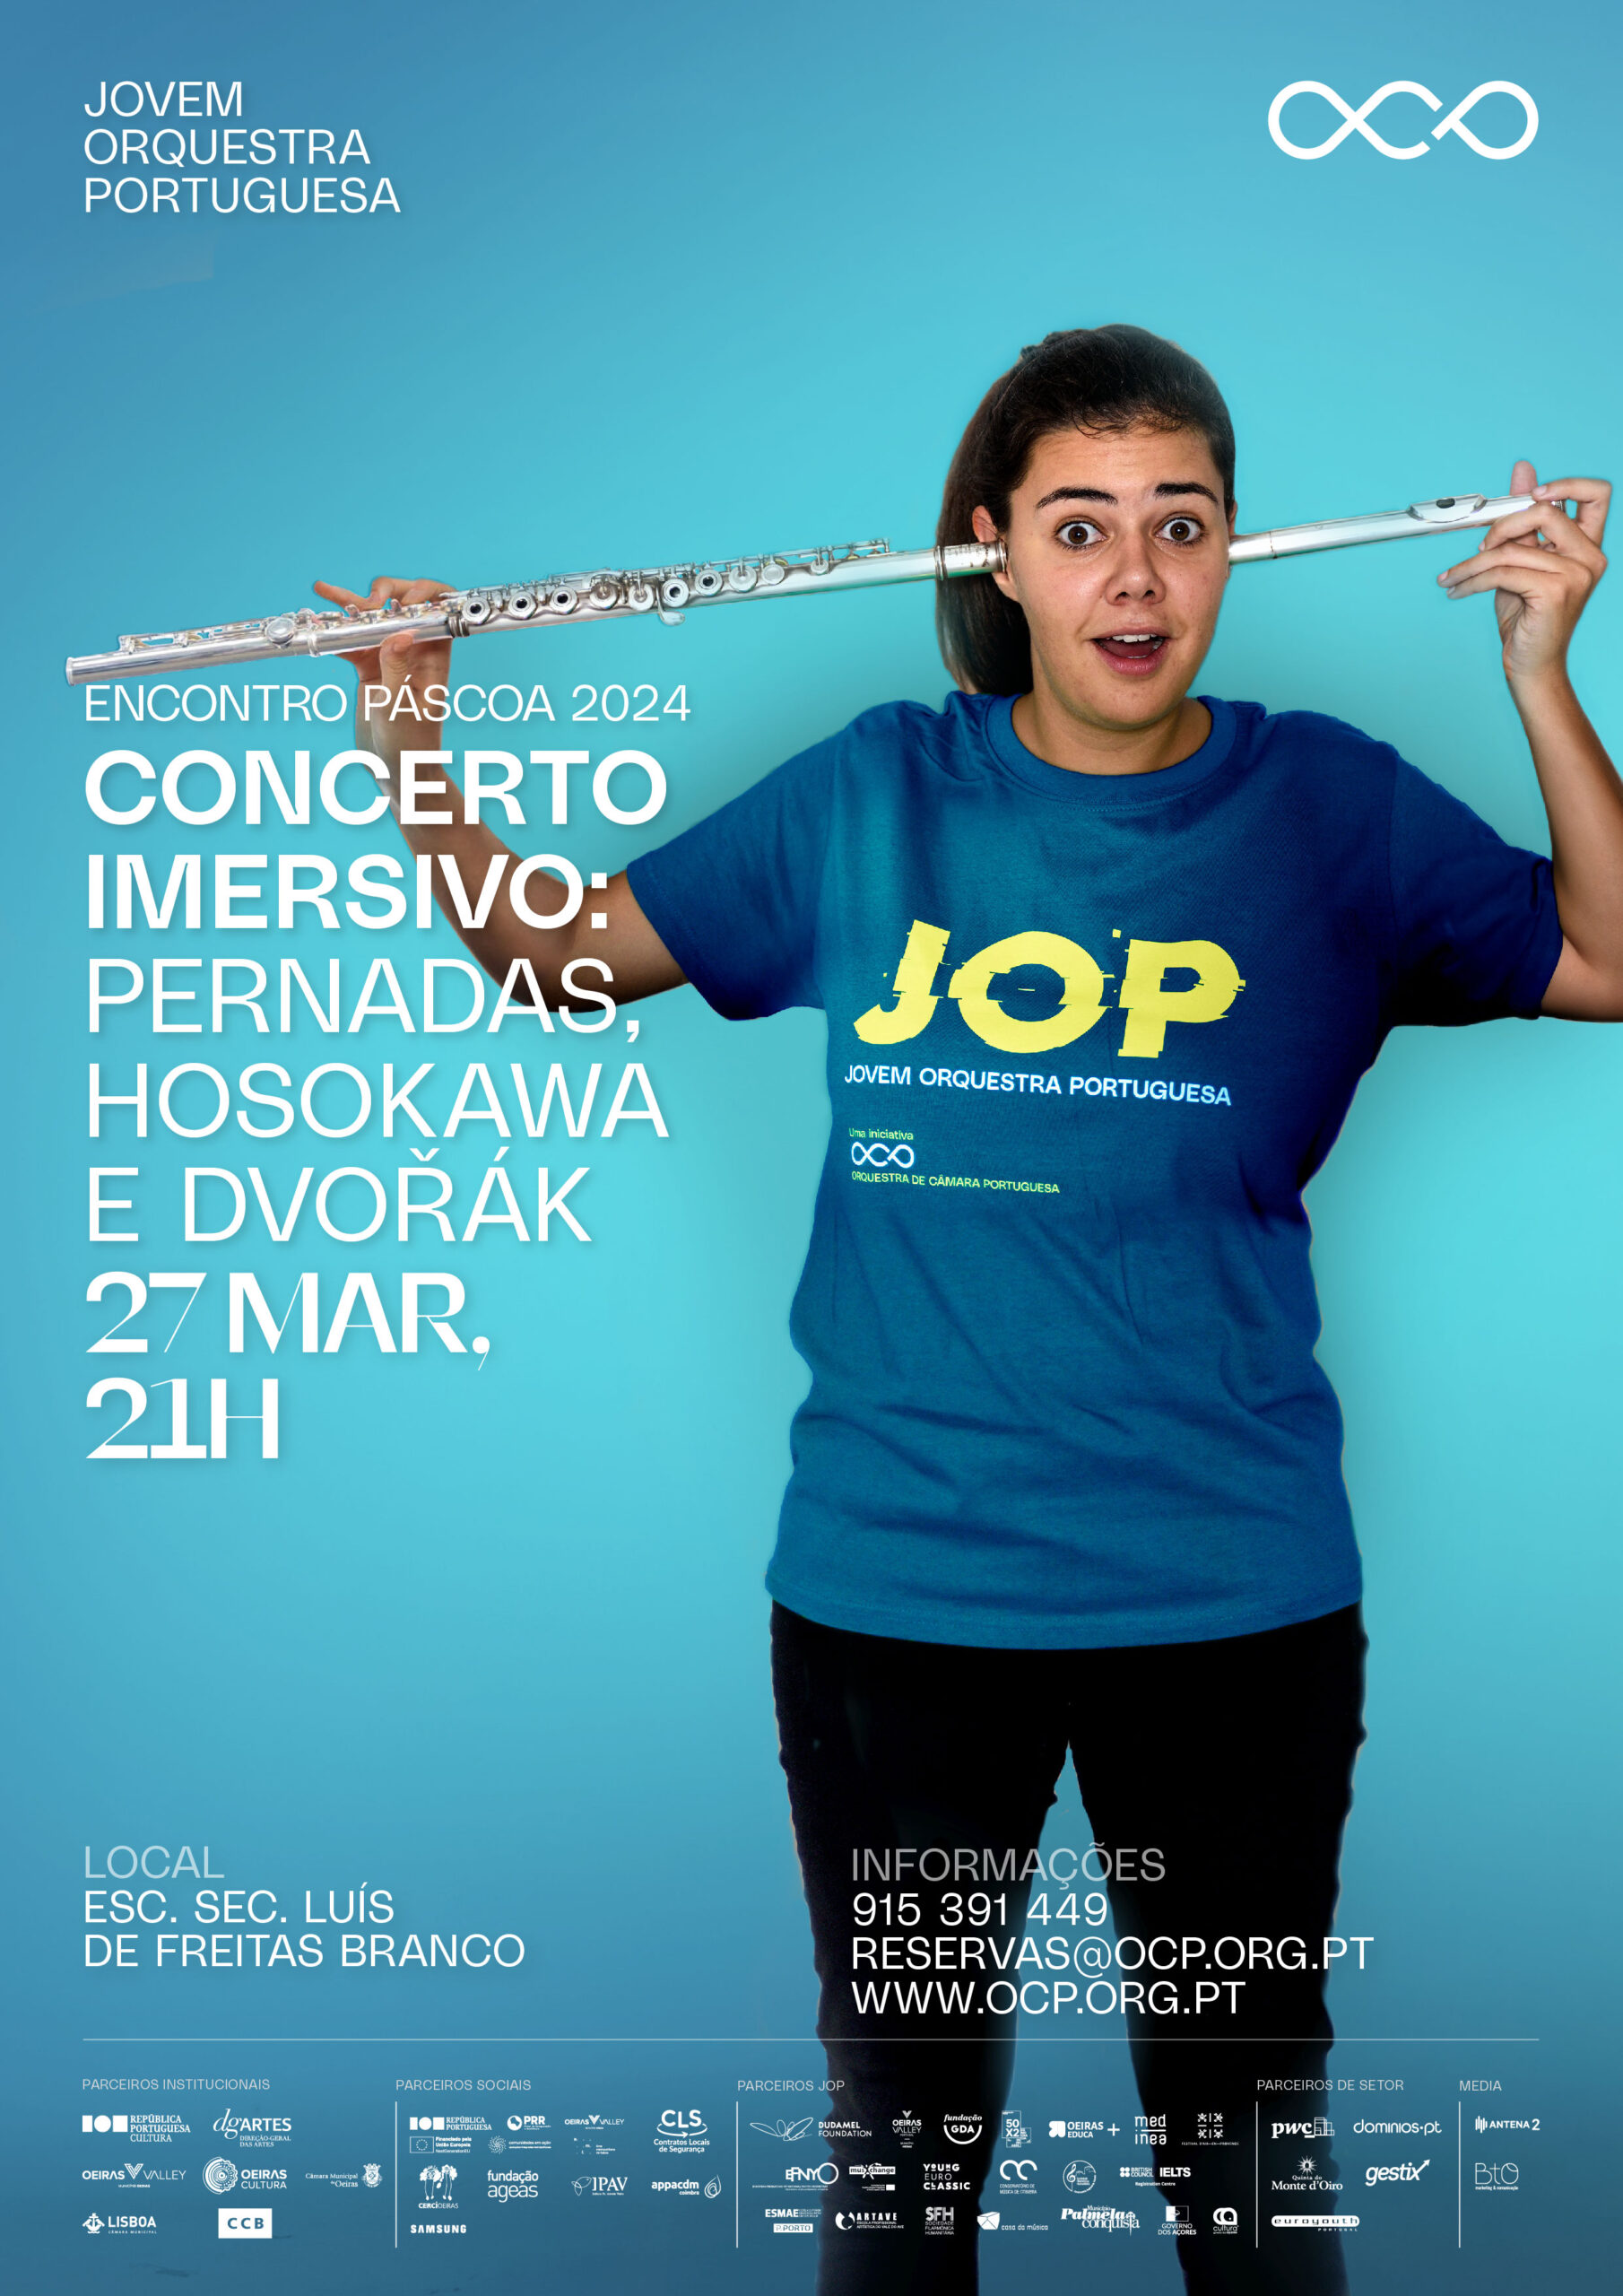 Capa Oficial do Evento Concerto: Pernadas, Hosakawa e Dvořák